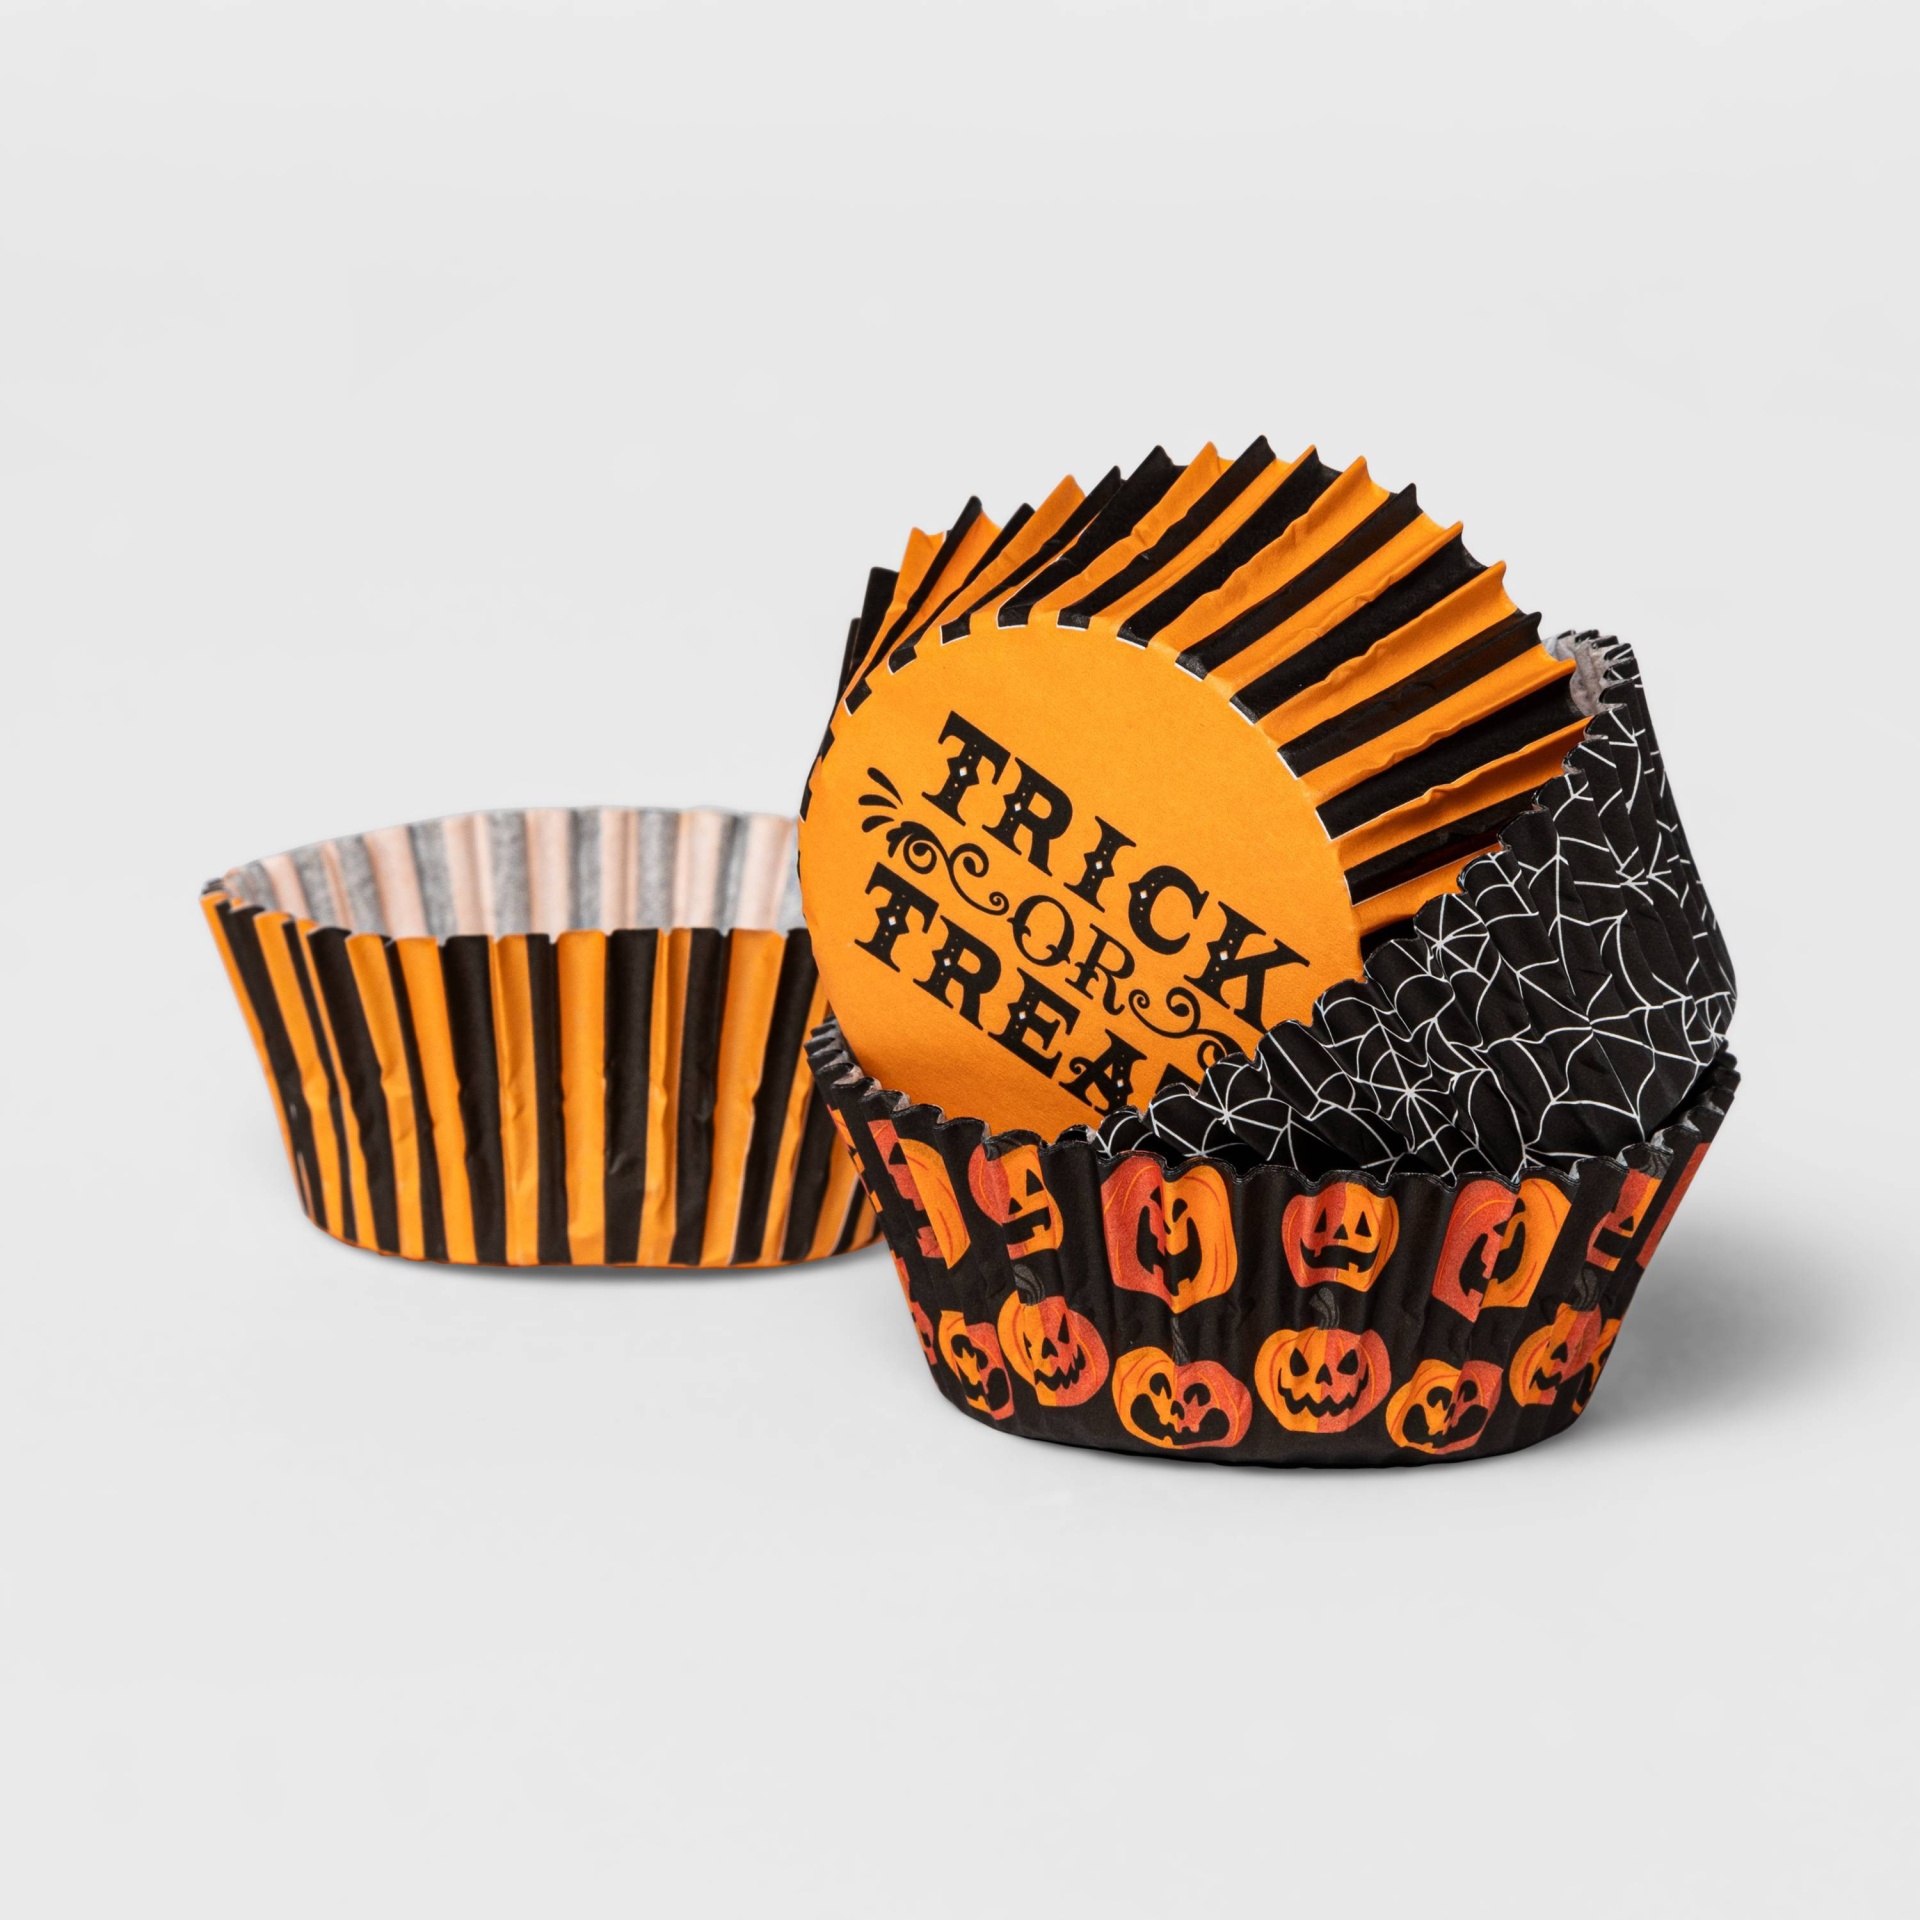 Cupcake Cases - Black